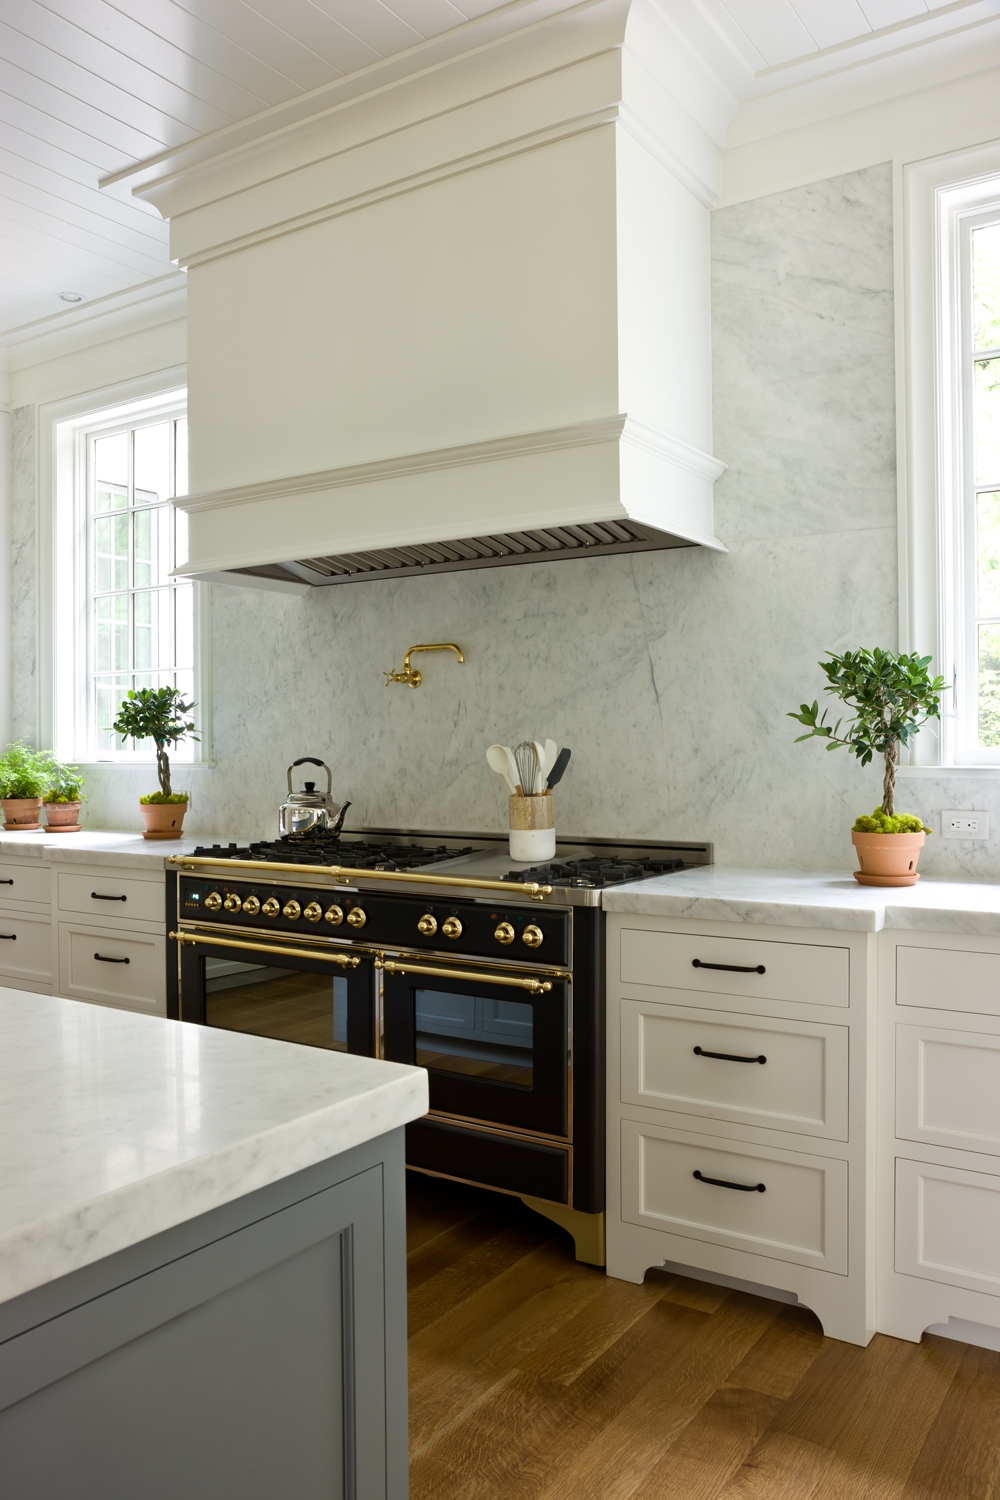 white kitchen with black italian range and marble backsplash